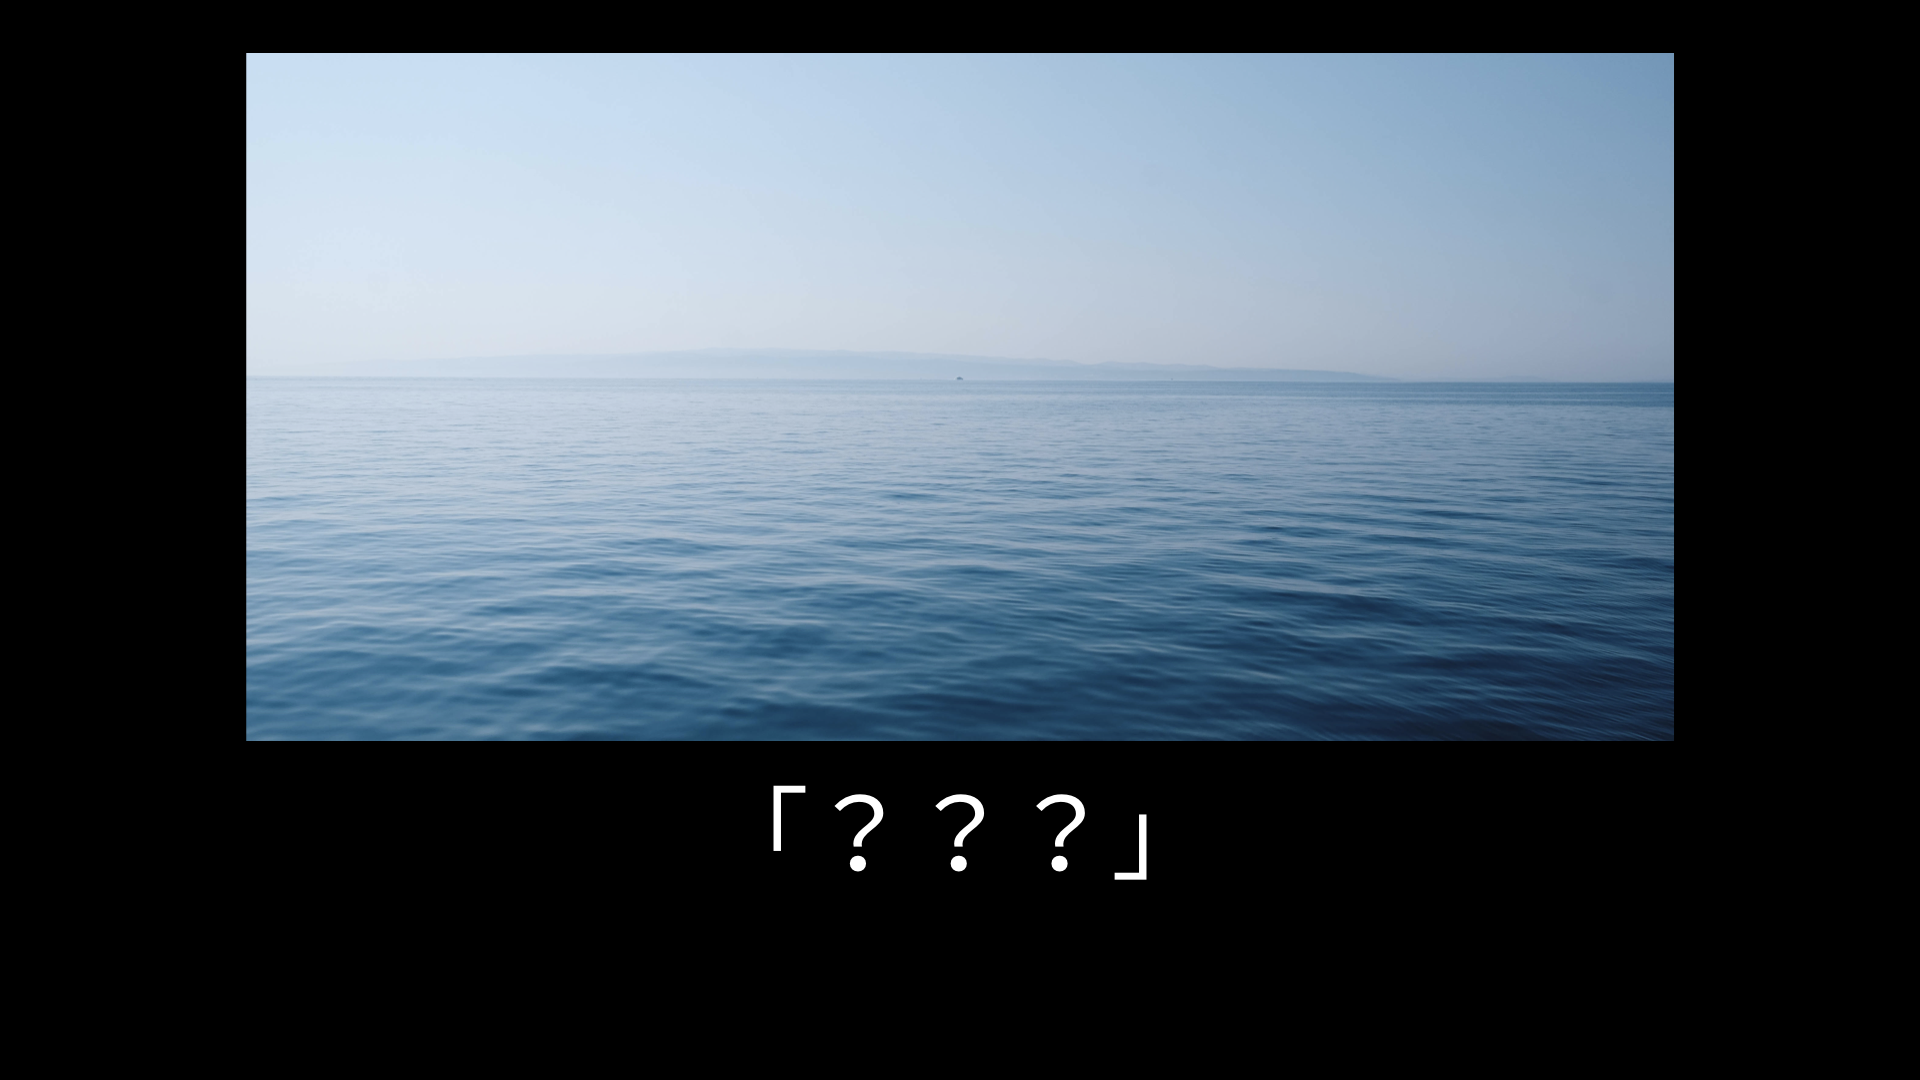 海の写真では代替テキストに何を記述すればよいのでしょうか。